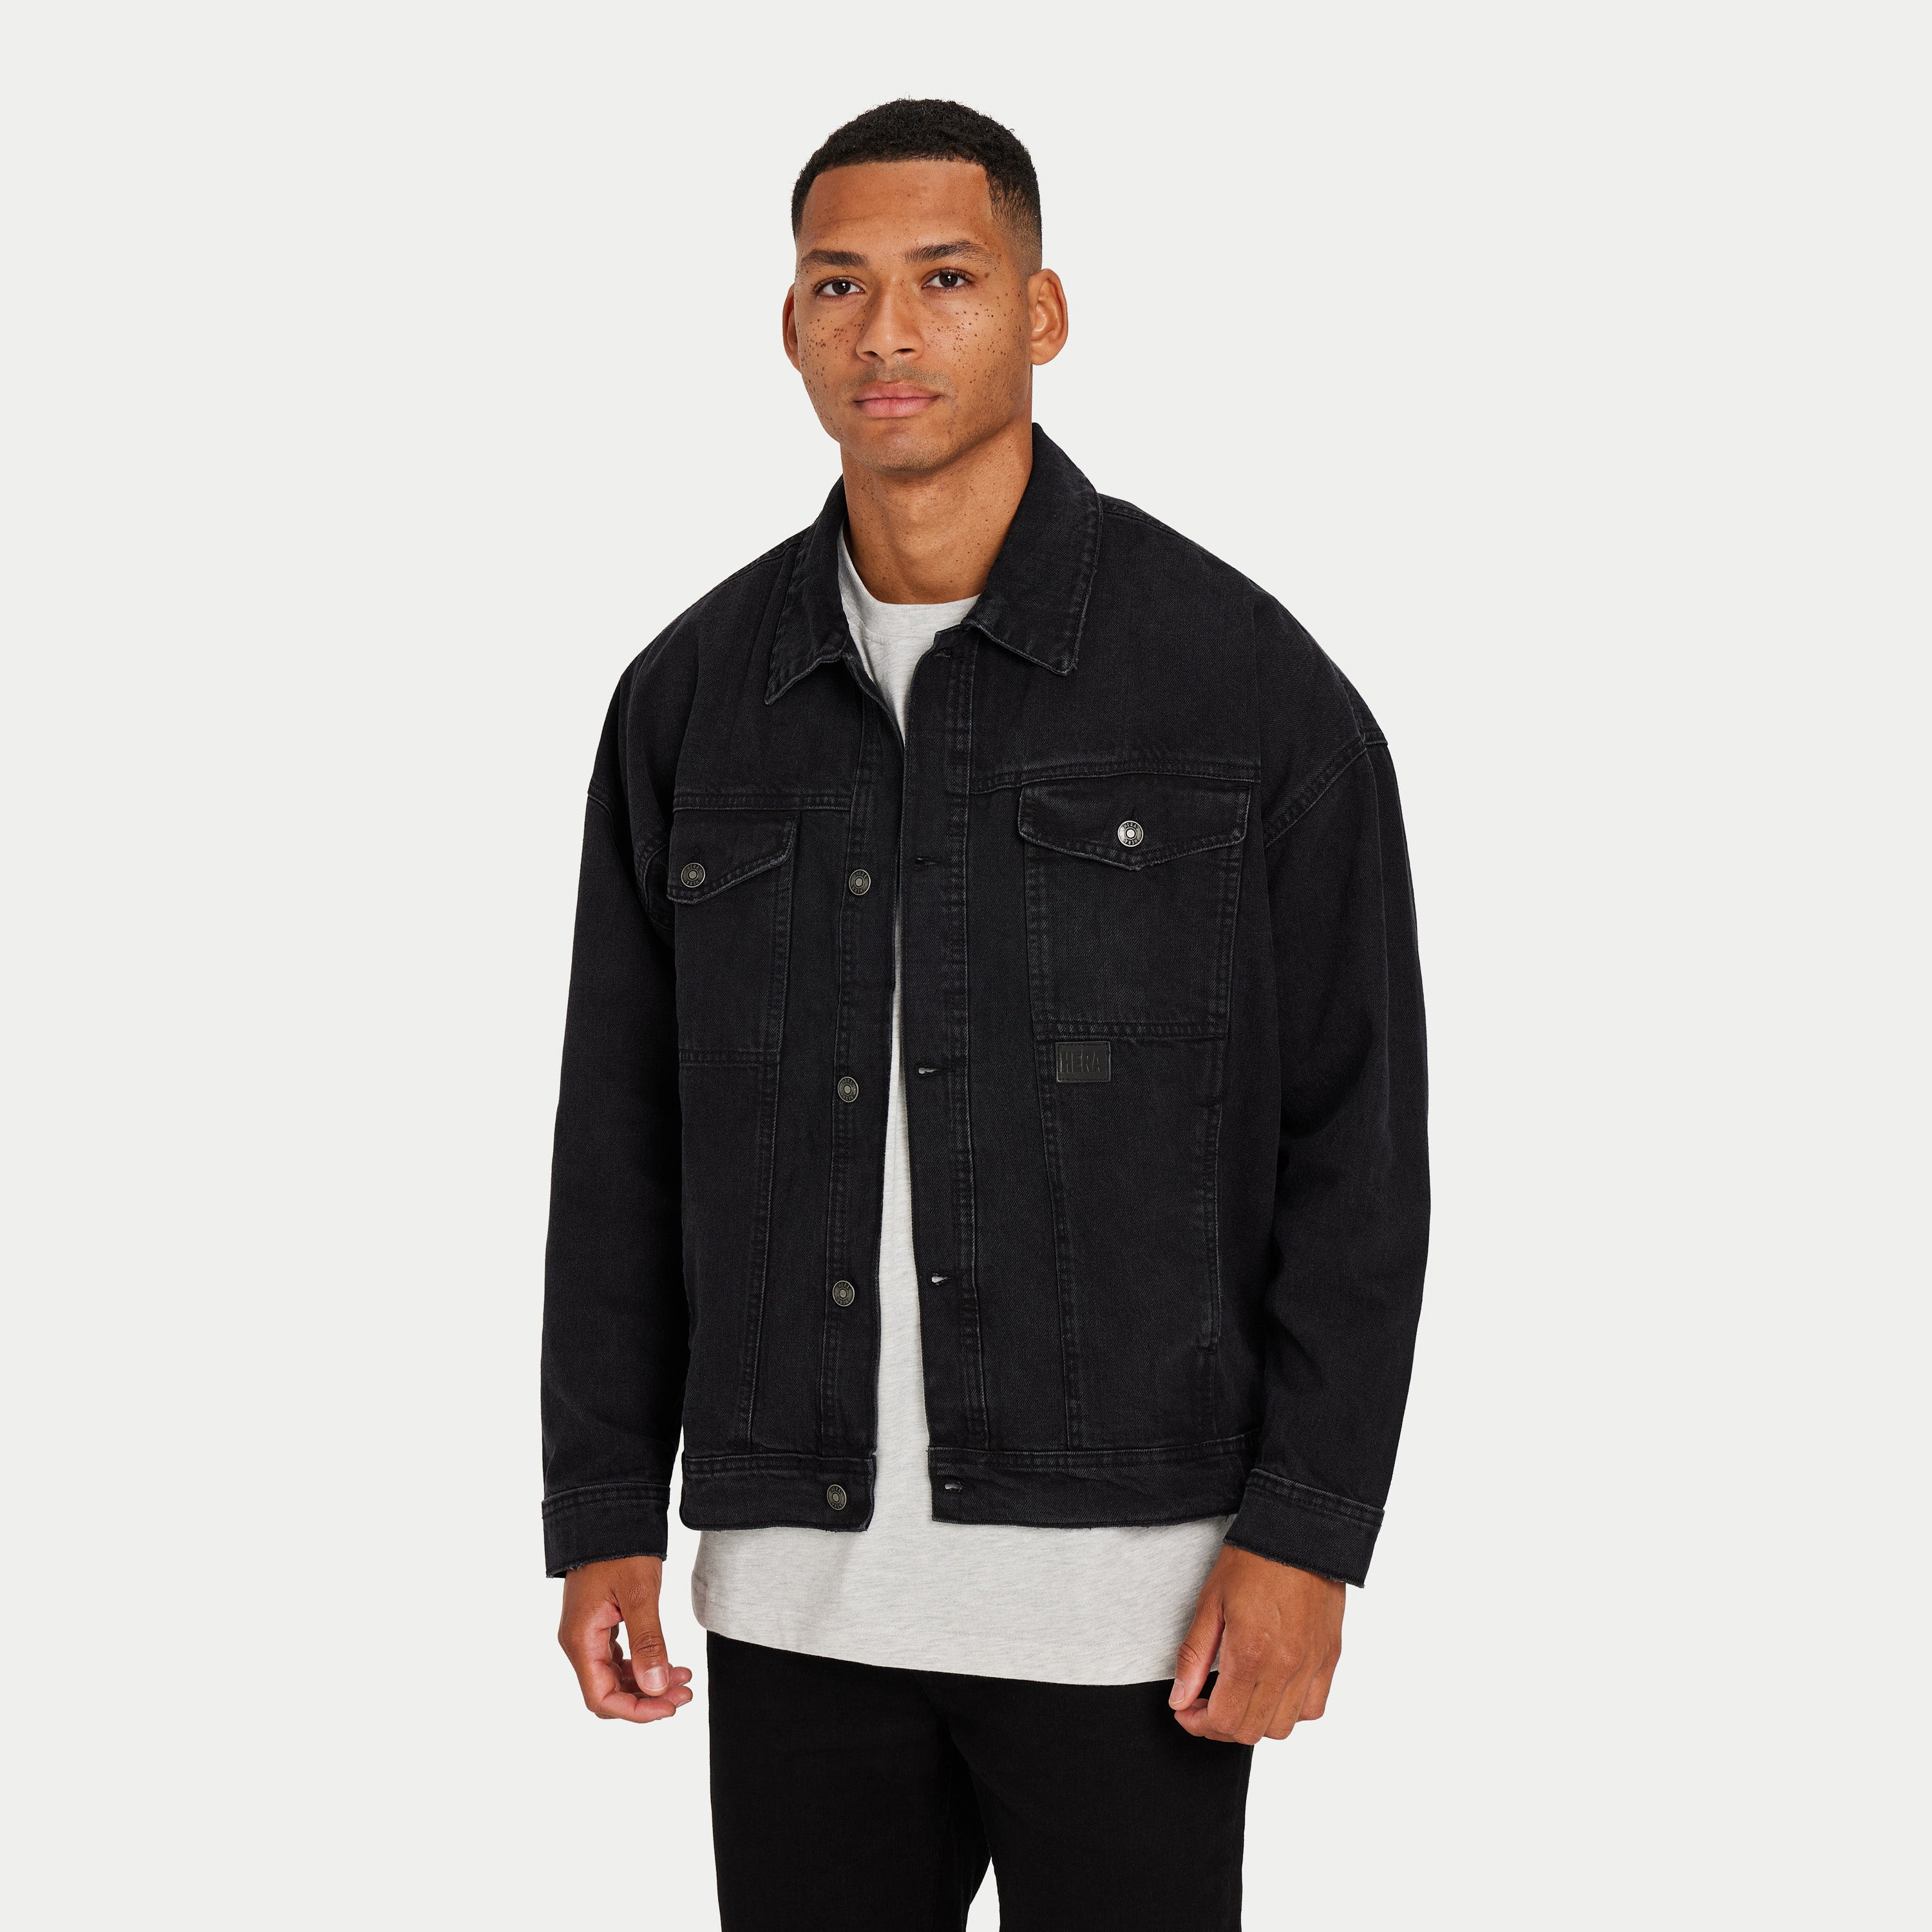 Men's Jackets & Coats | HERA Clothing